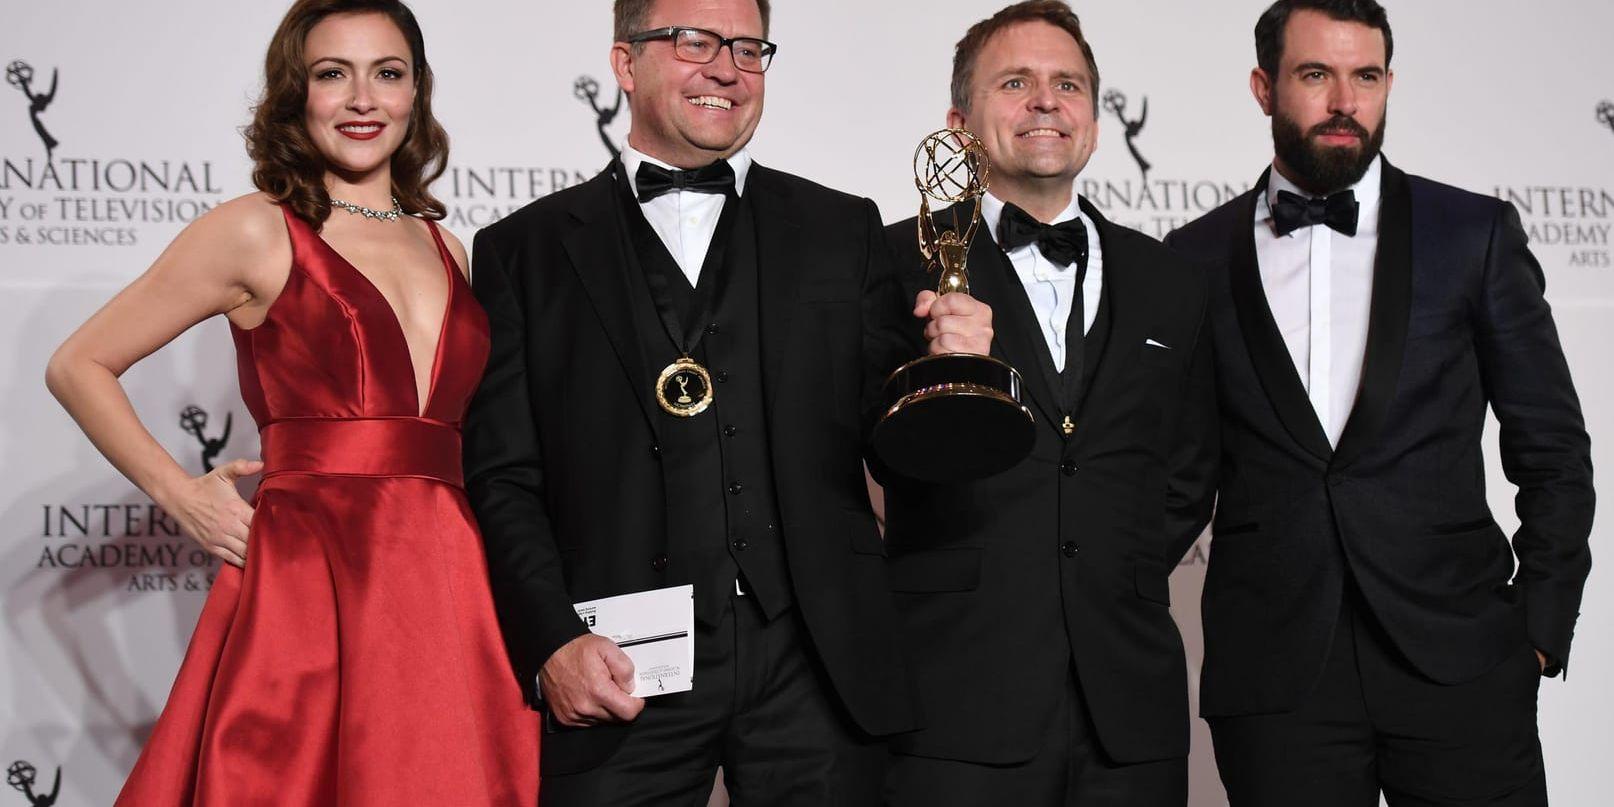 Gjermund Stenberg Eriksen och Vegard Stenberg Eriksen tillsammans med skådespelarna Italia Ricci och Tom Cullen vid den internationella Emmygalan.